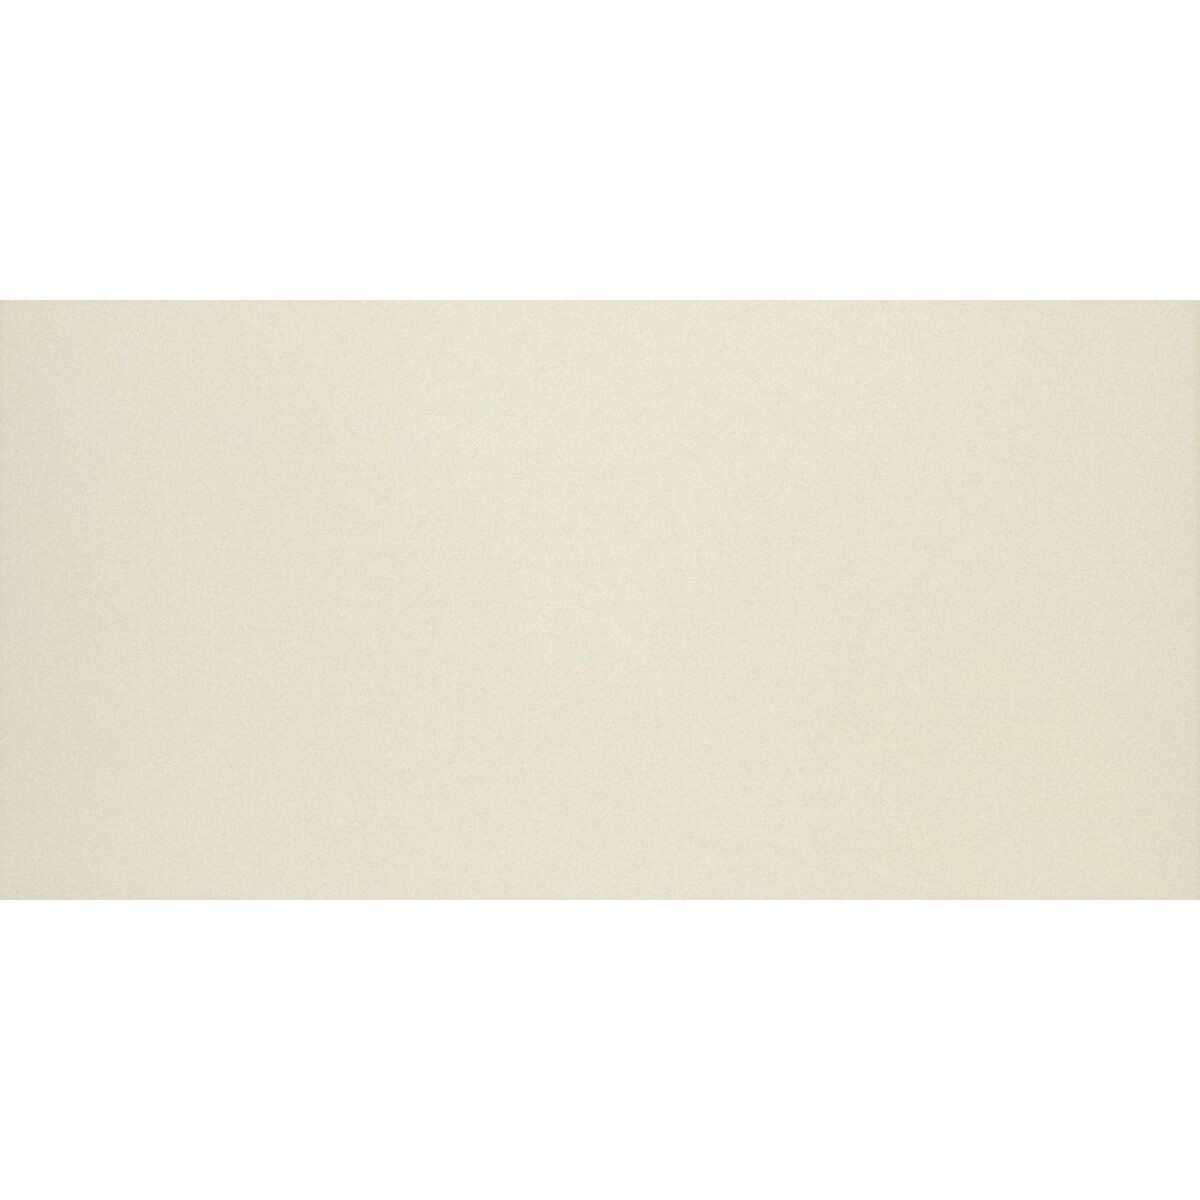 Cerámica Natural beige light - 2.03m2 